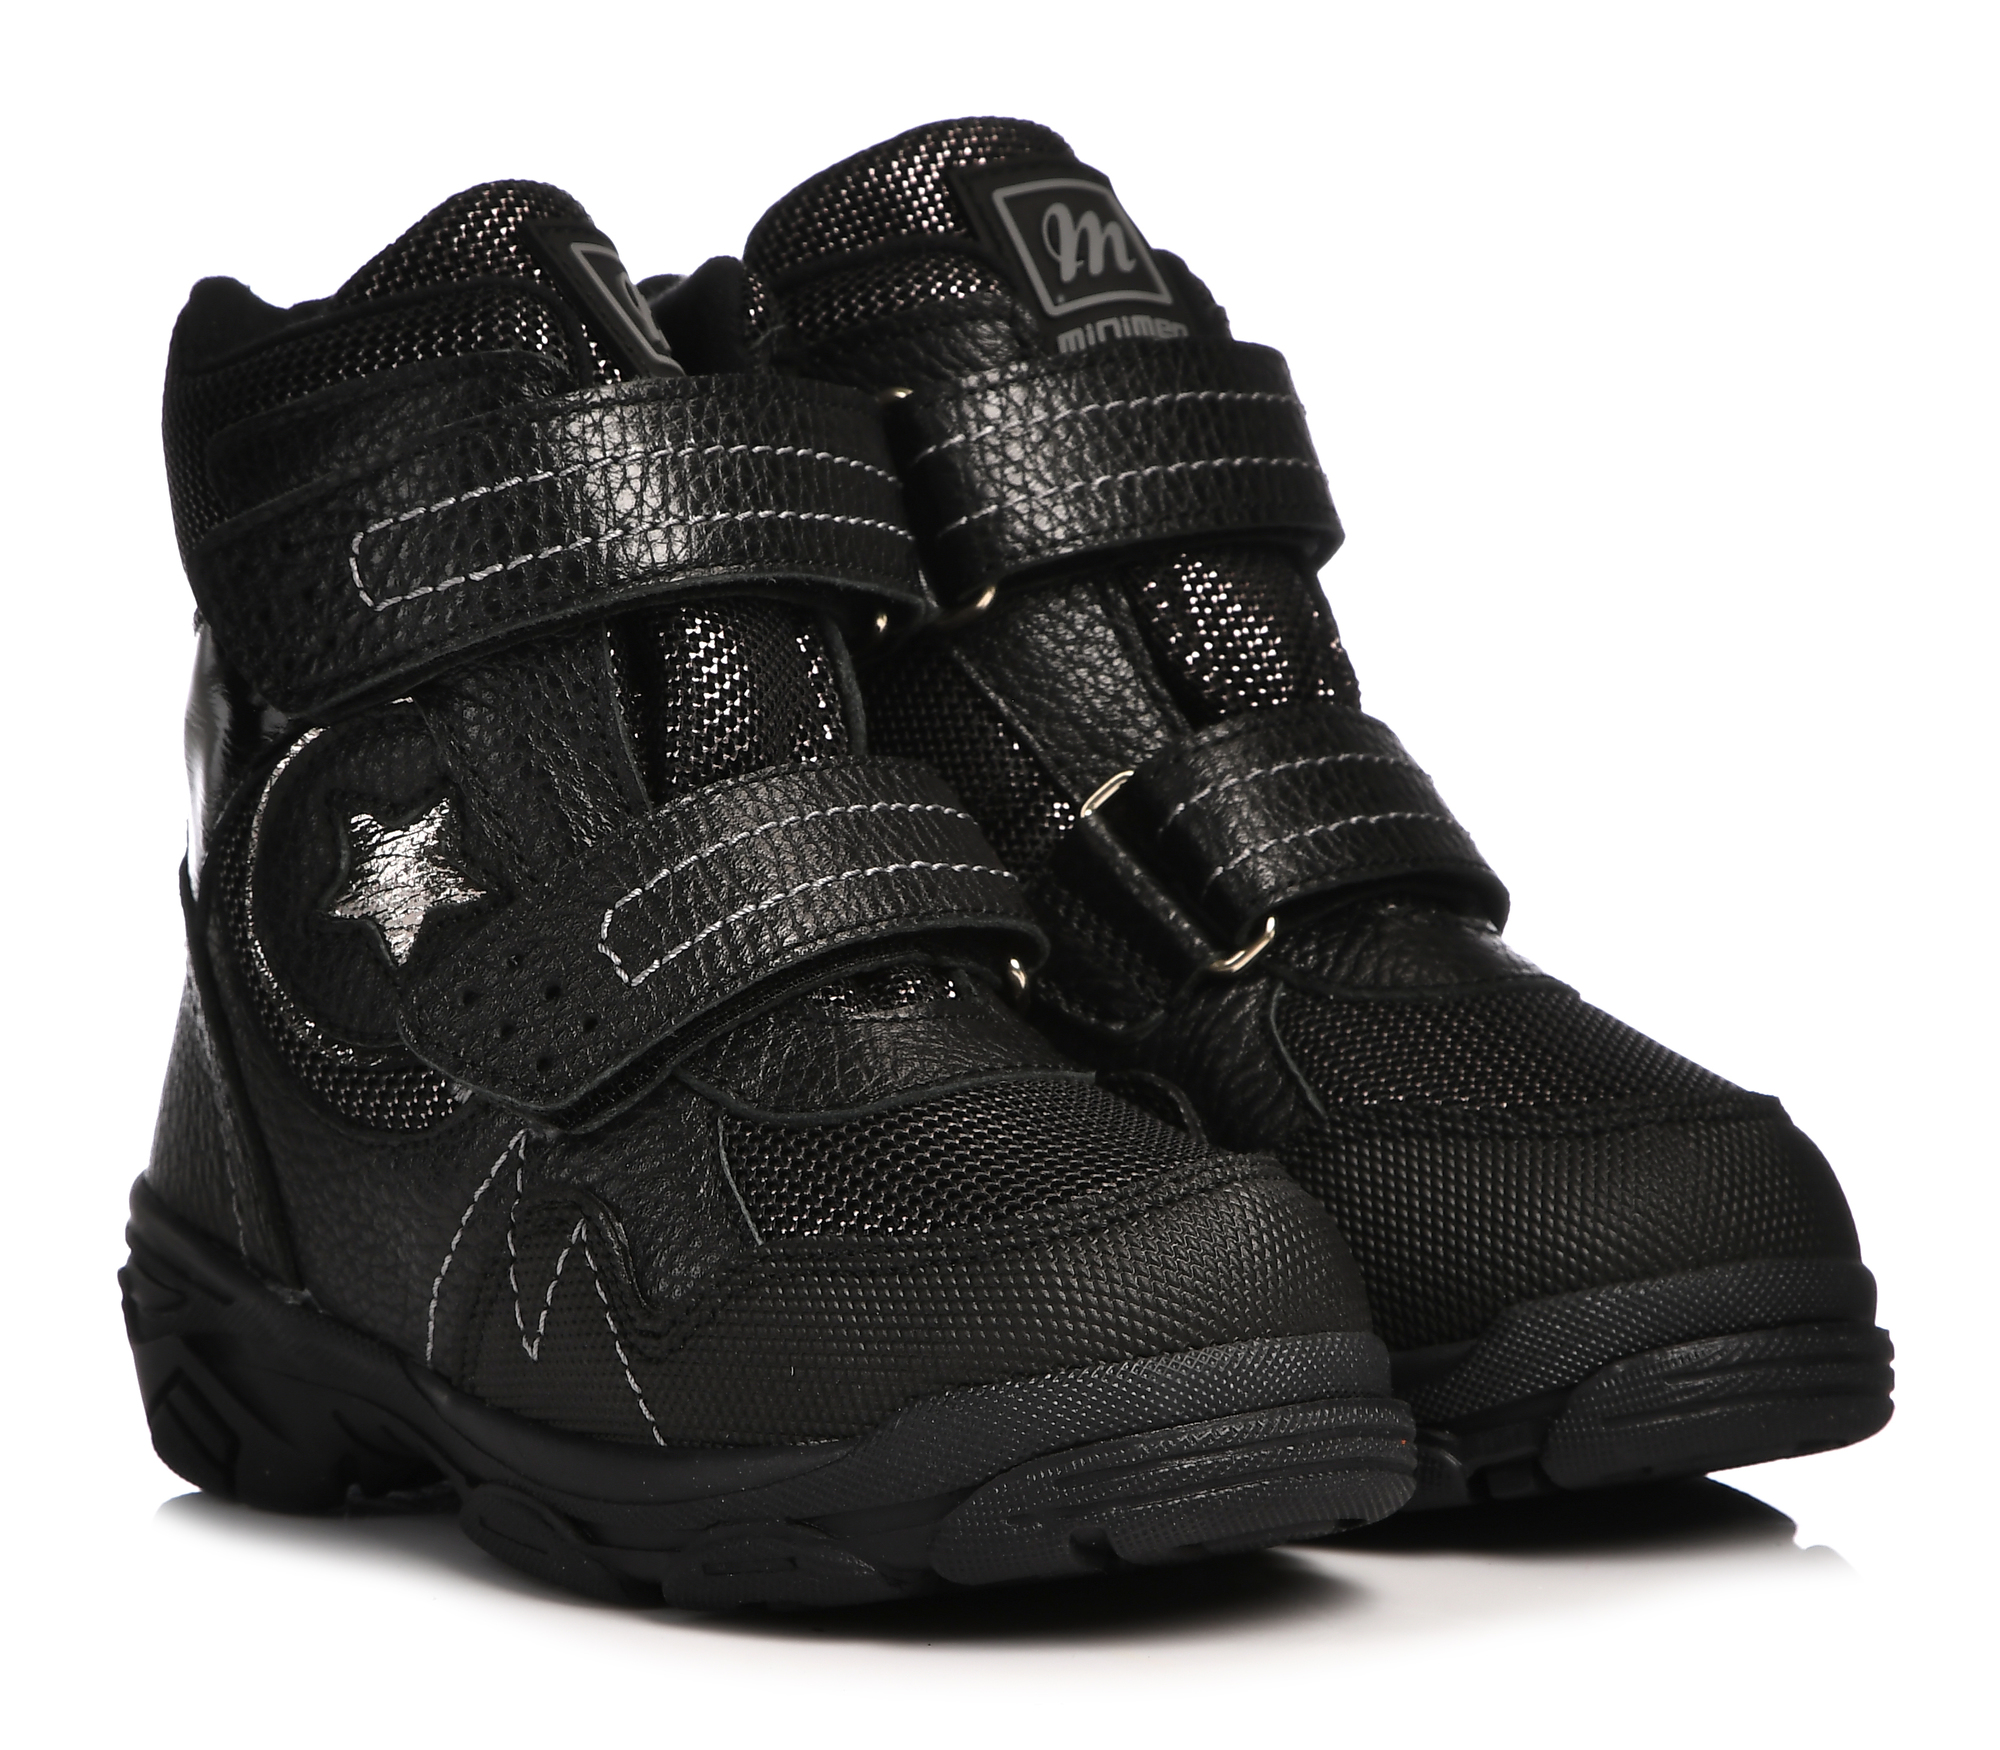 Ботинки Minimen для девочек, чёрные, размер 26, 2658-63-23B-05 ботинки minimen для девочек сиреневые размер 30 2658 63 23b 04